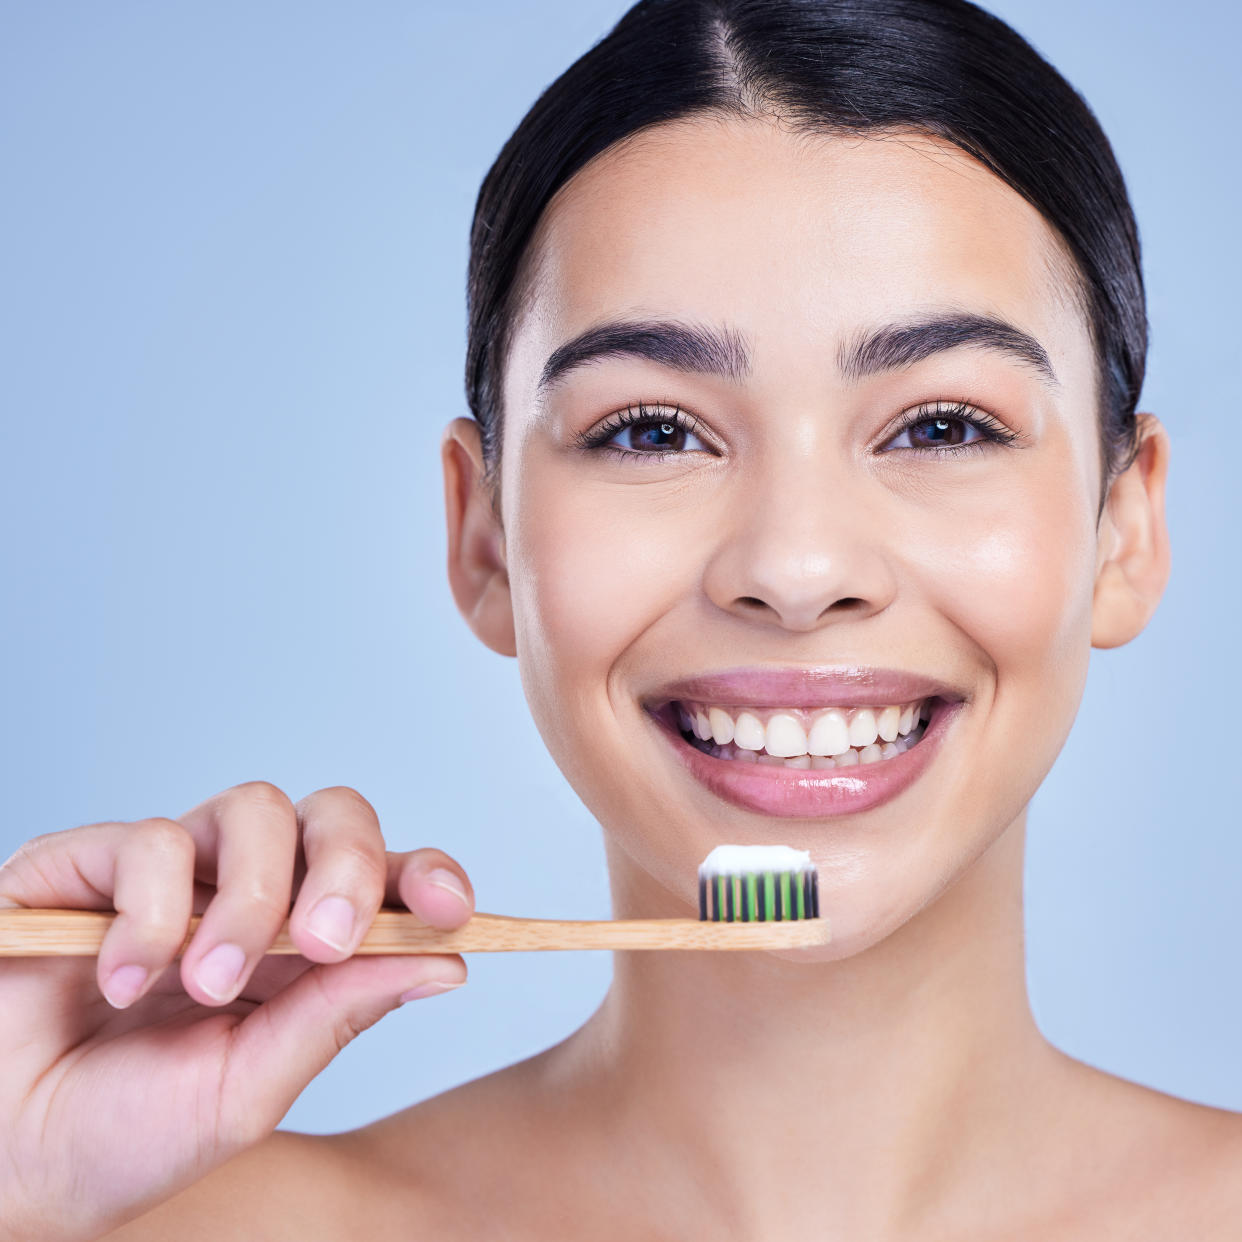 ¿Quieres tener una sonrisa blanca y hermosa? Checa estos artículos recomendados por mi odontólogo. (Foto: Getty)